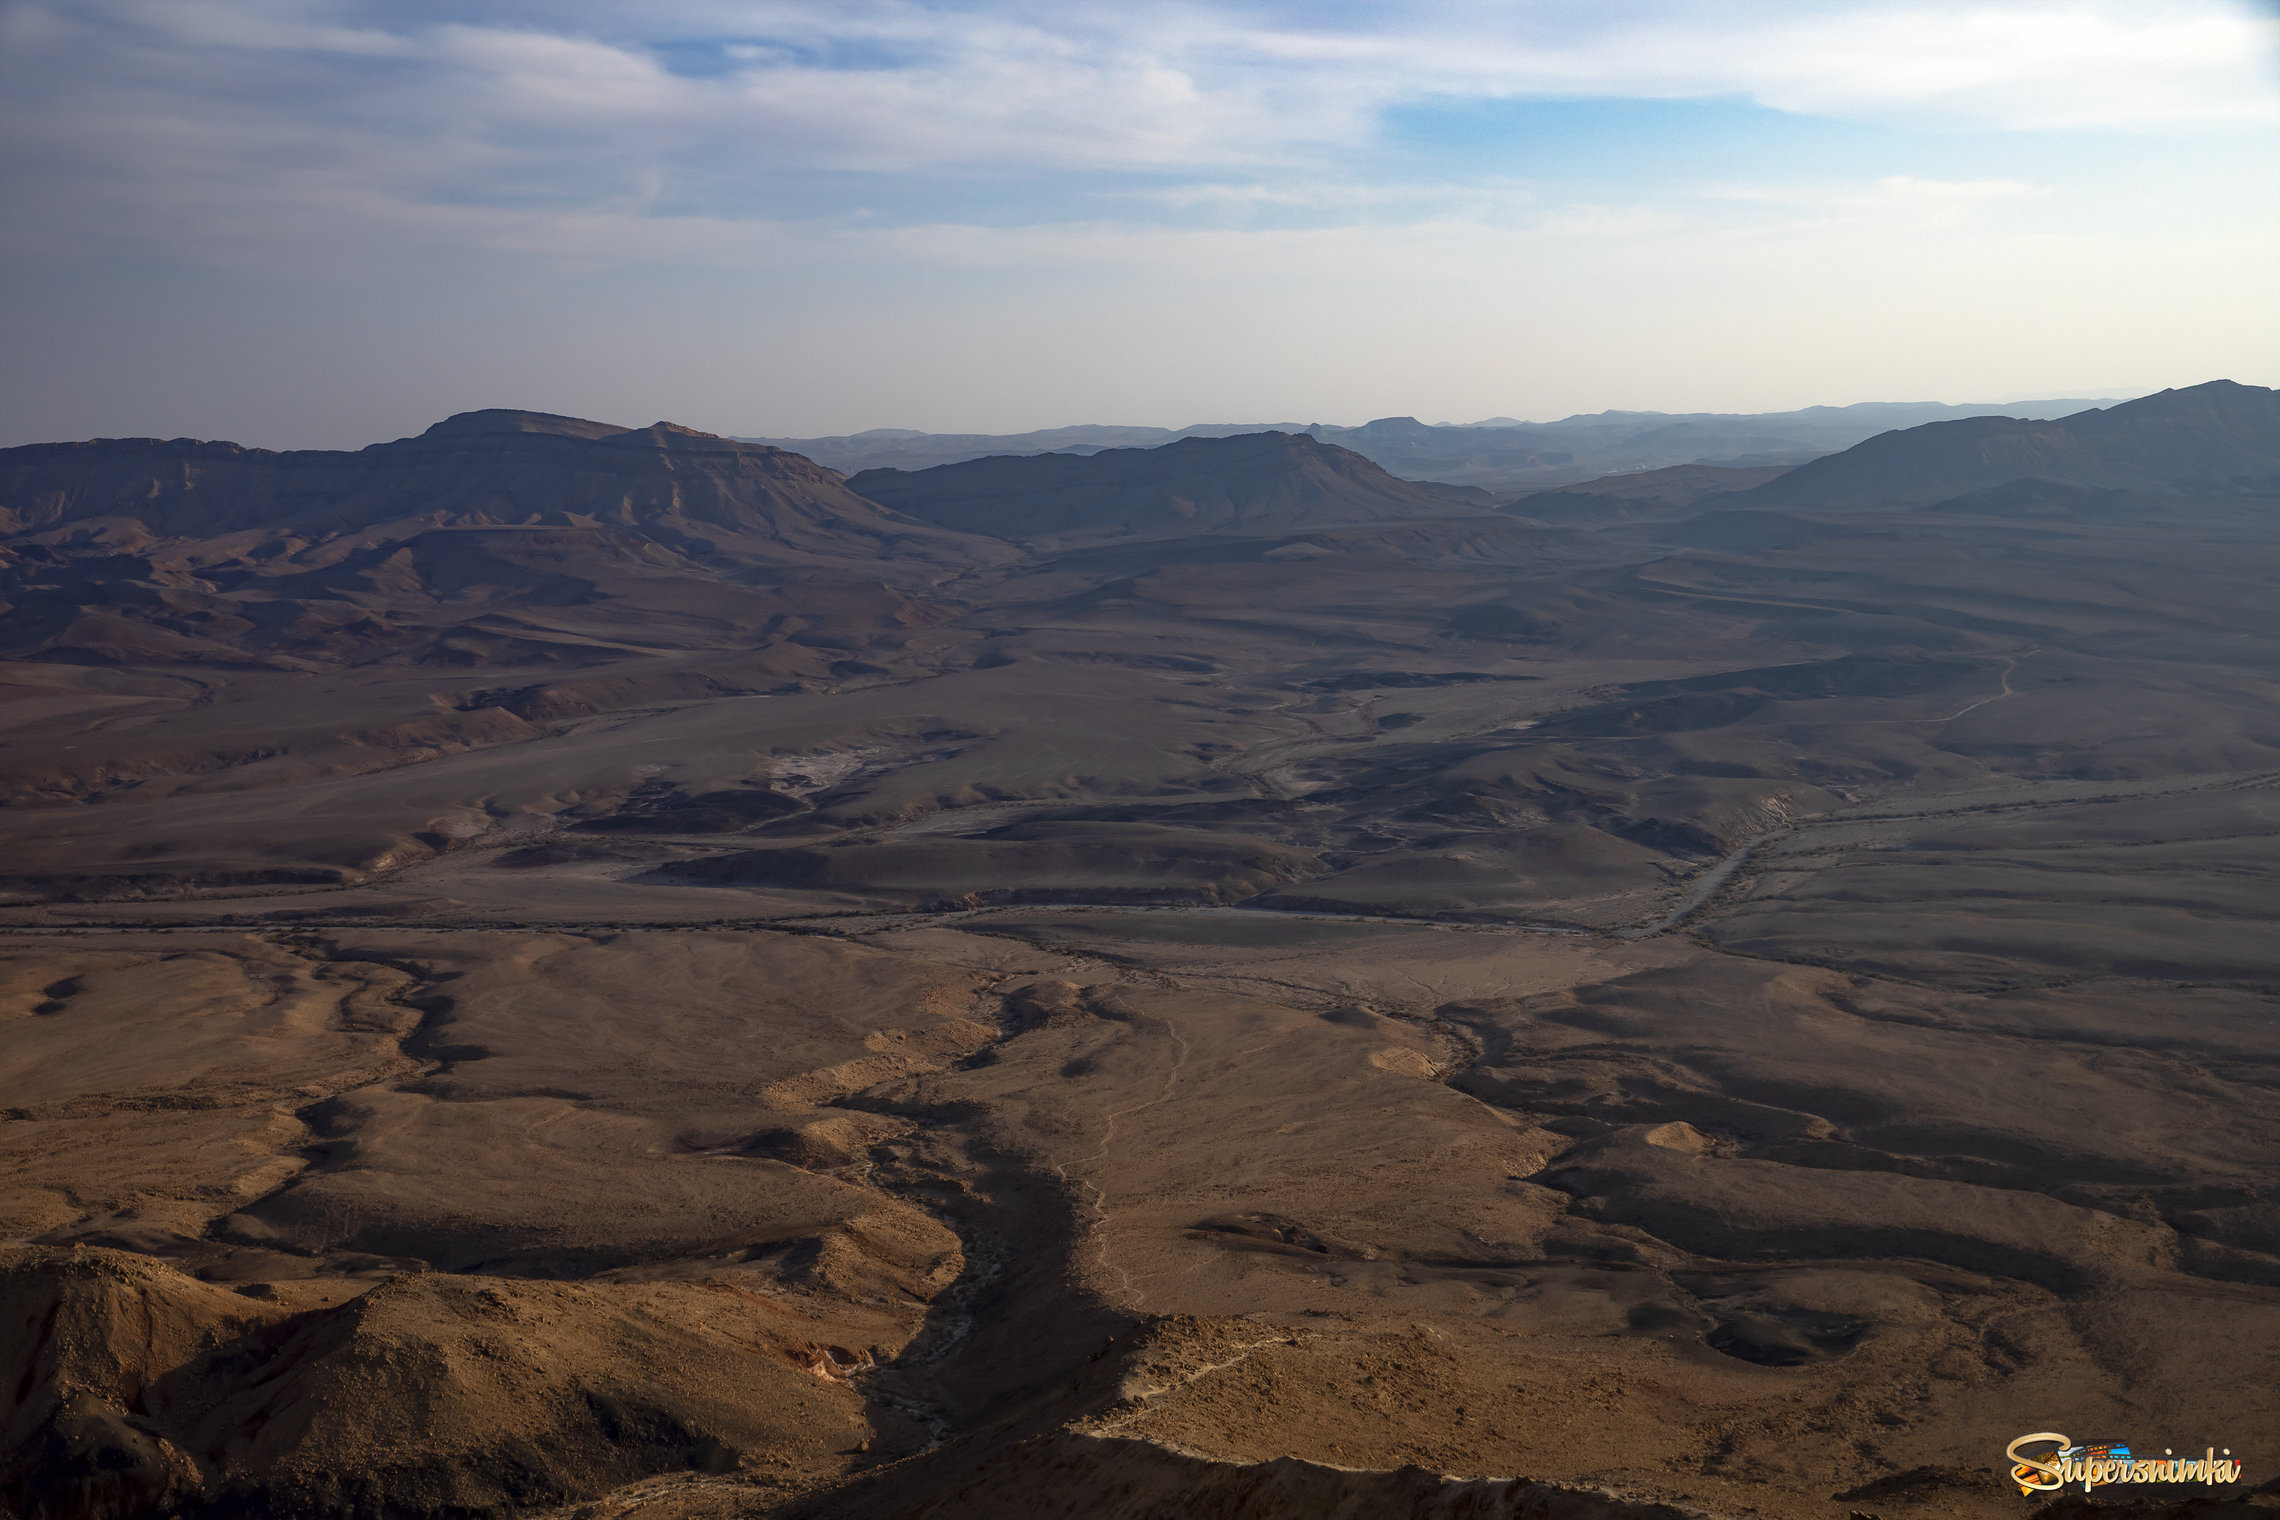  Кусочек Марса в пустыне Негеев